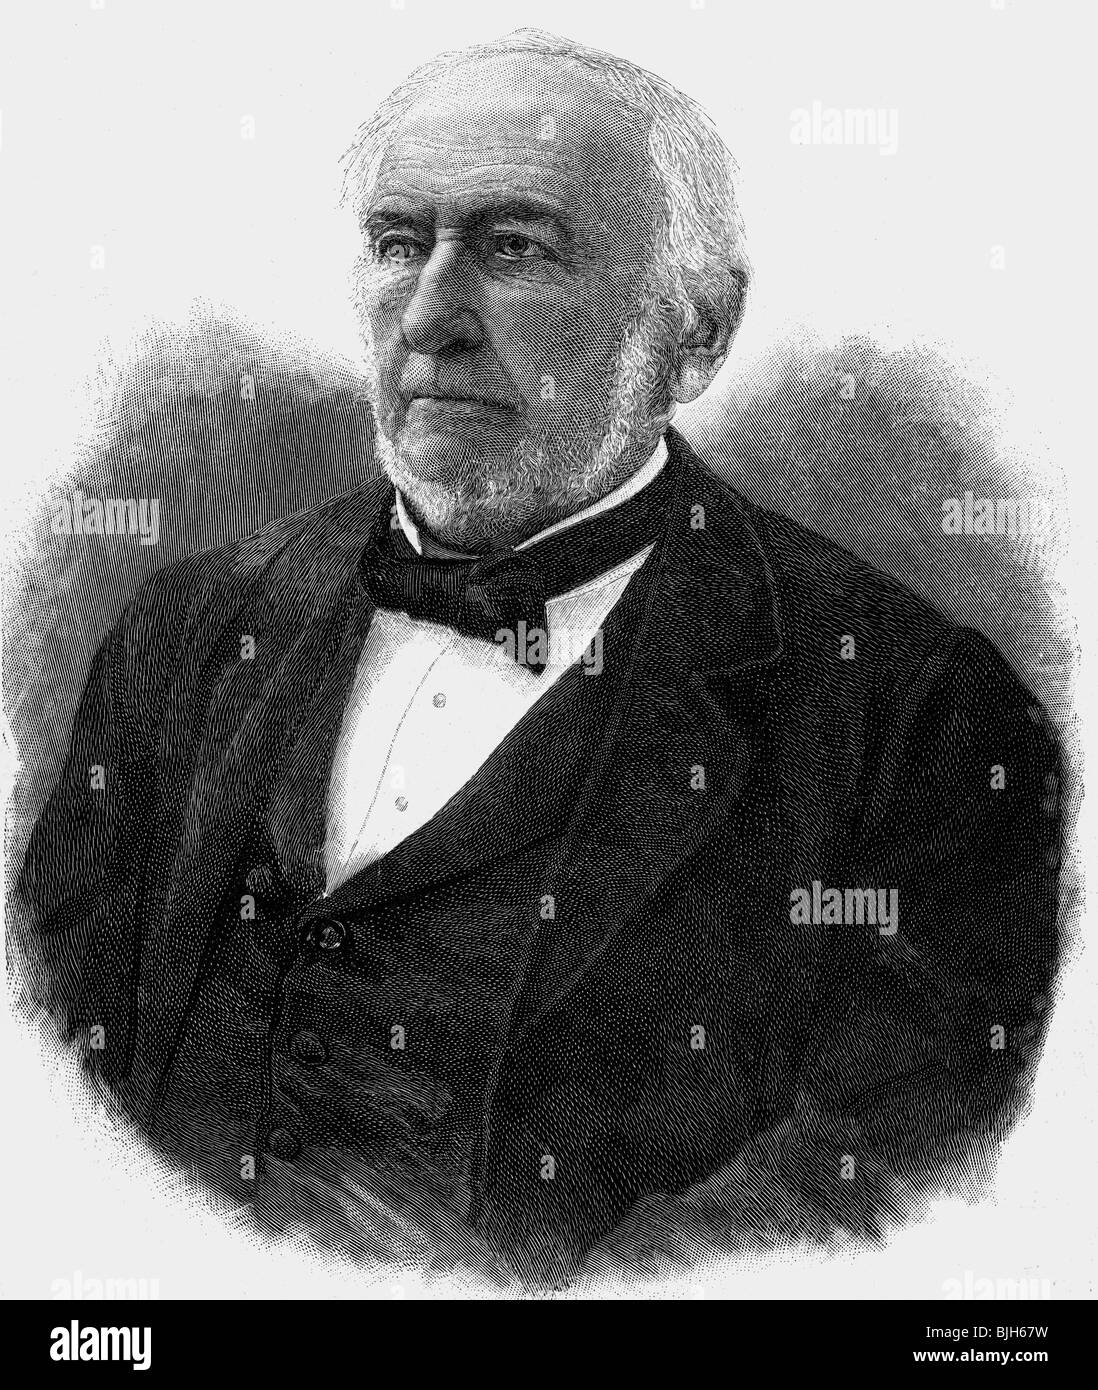 Gladstone, William Eward, 29.12.1809 - 19.5.1898, britischer Politiker (Lib.), Porträt, Holzgravur, 1898, Stockfoto